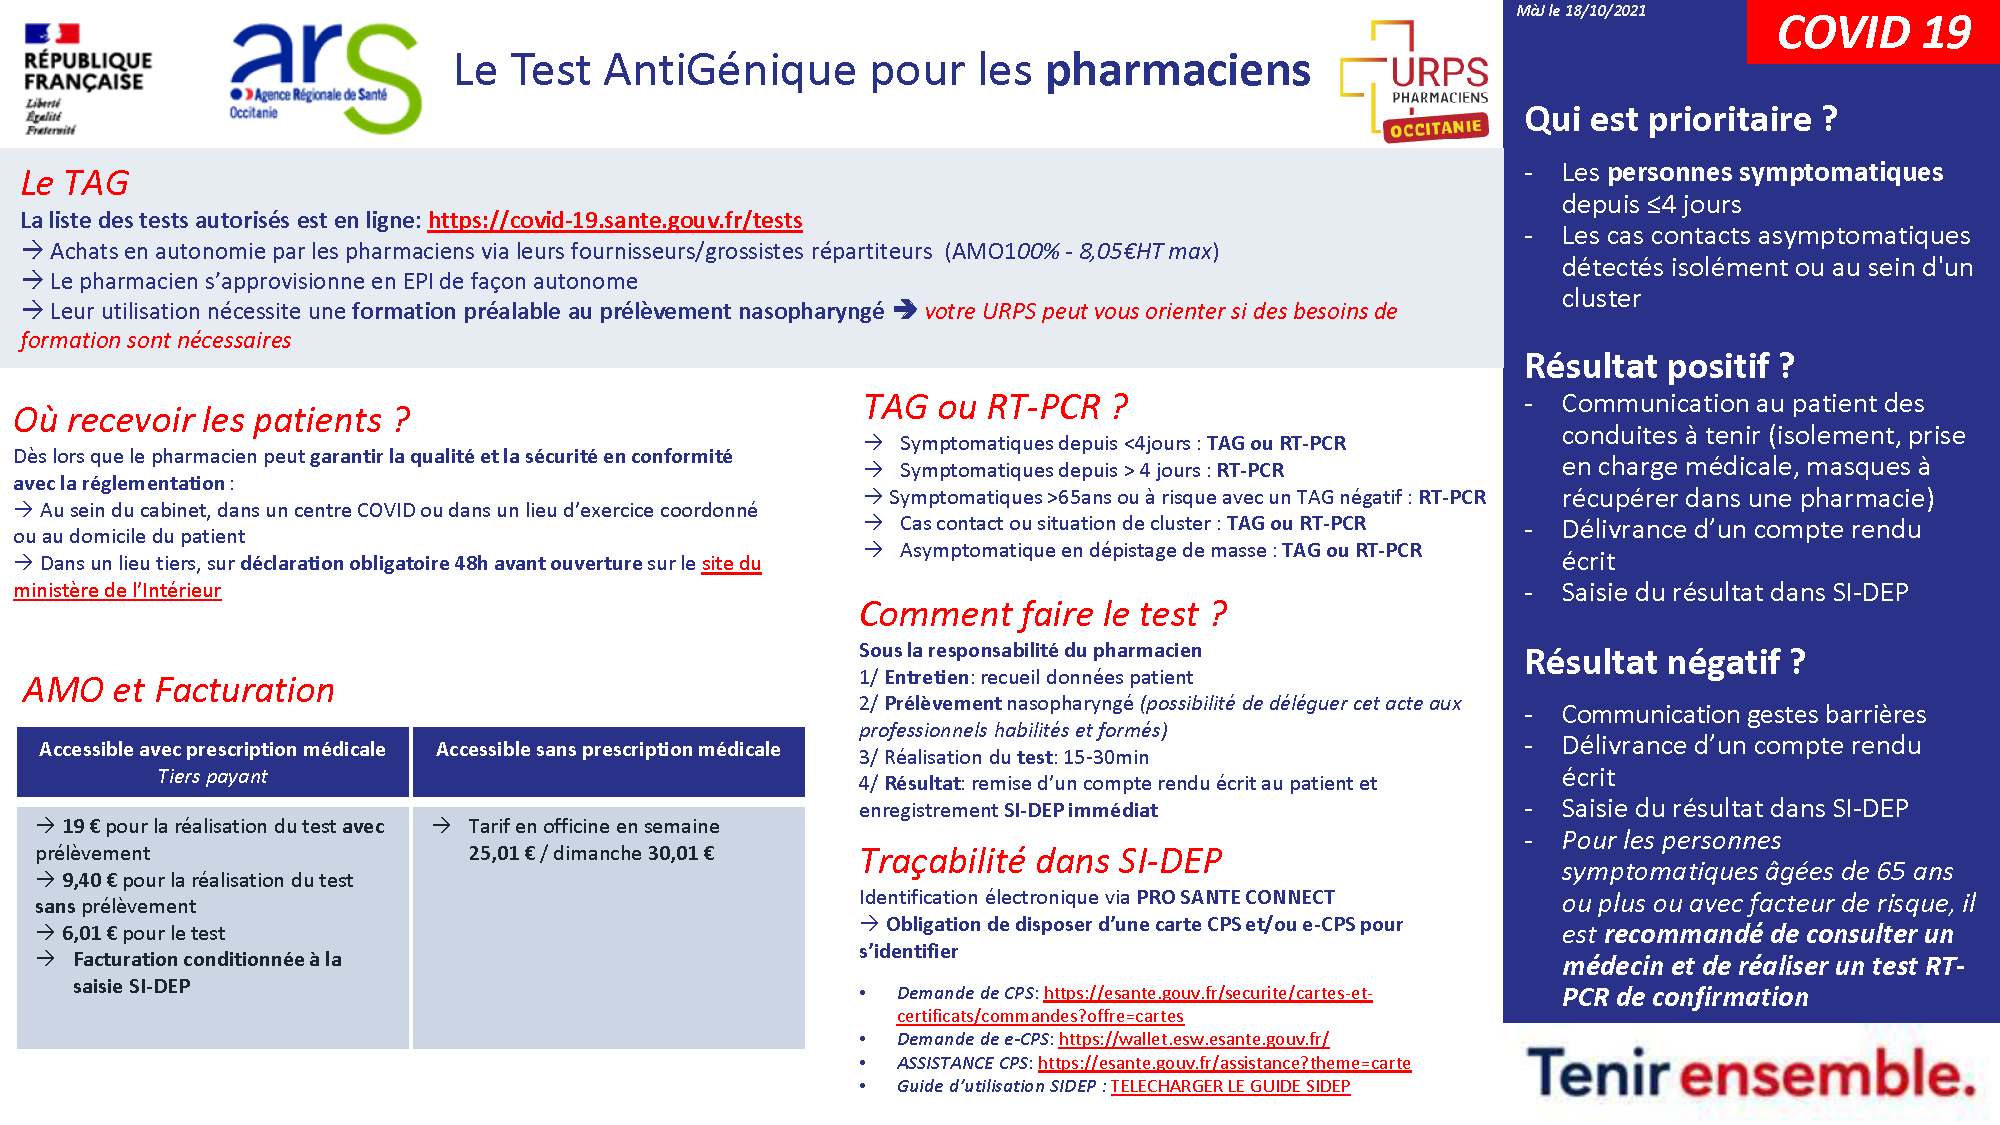 #COVID19. Tests antigéniques fiche technique Pharmacien